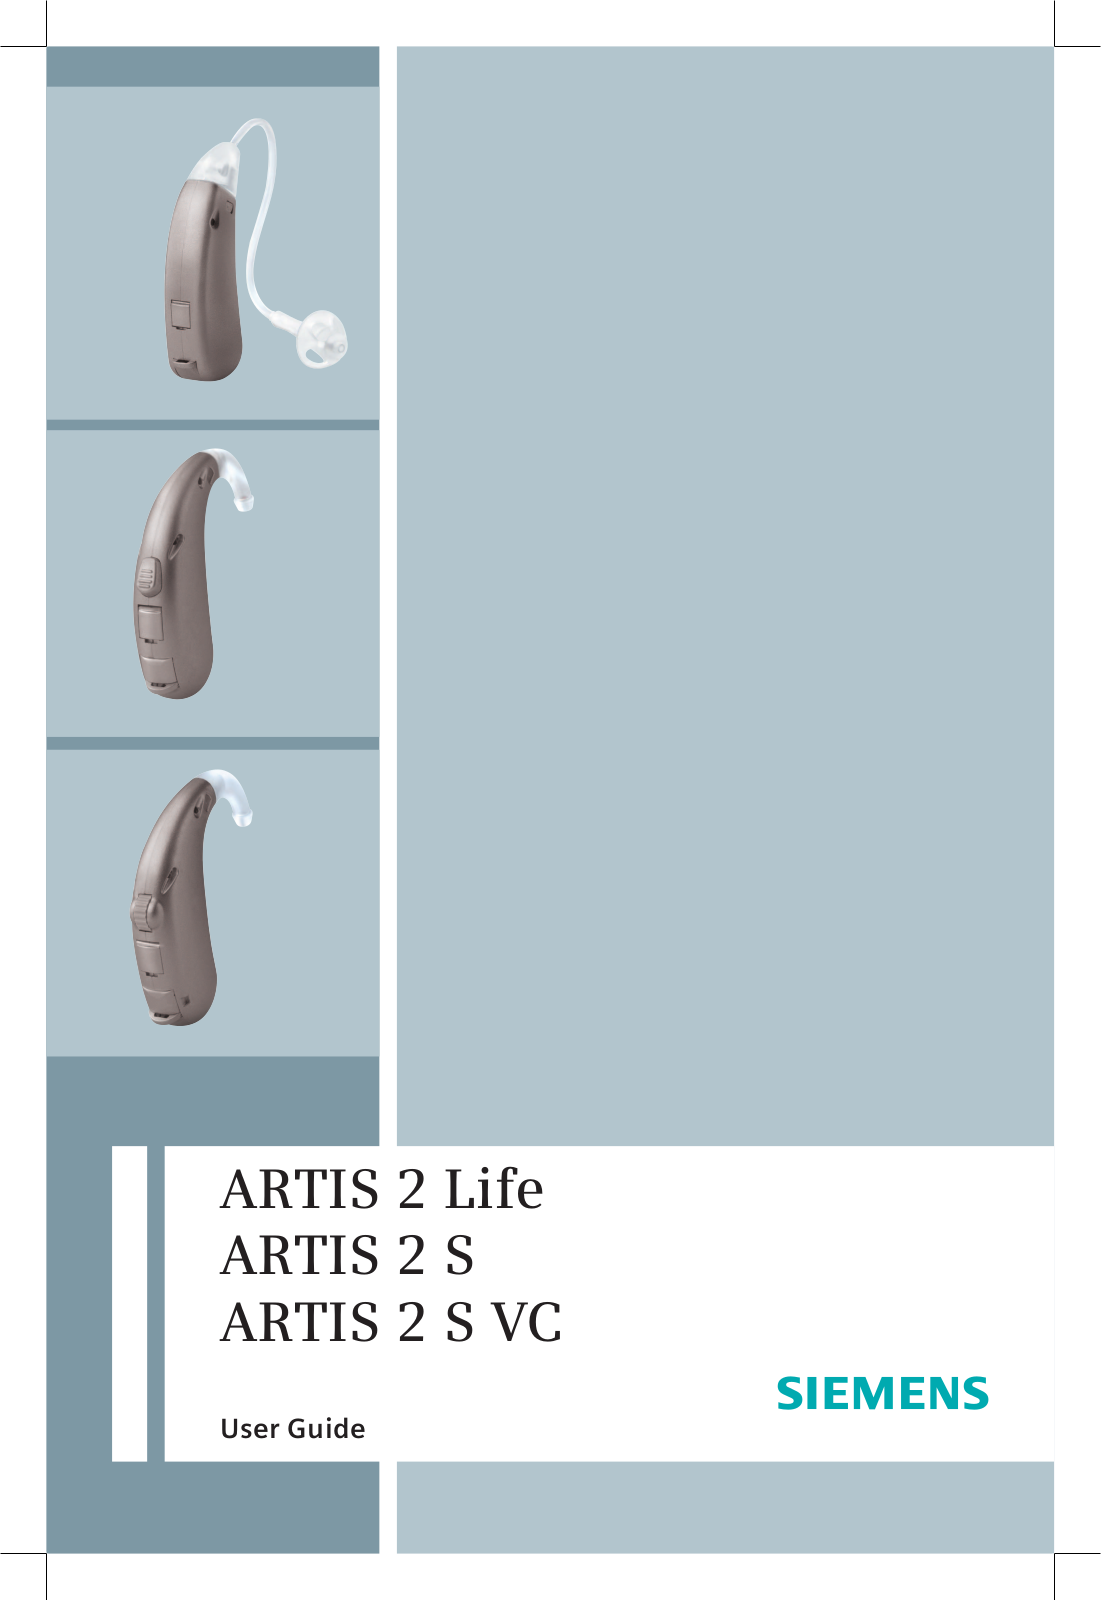 Siemens ARTIS 2 Life, ARTIS 2 S, ARTIS 2 S VC User Guide